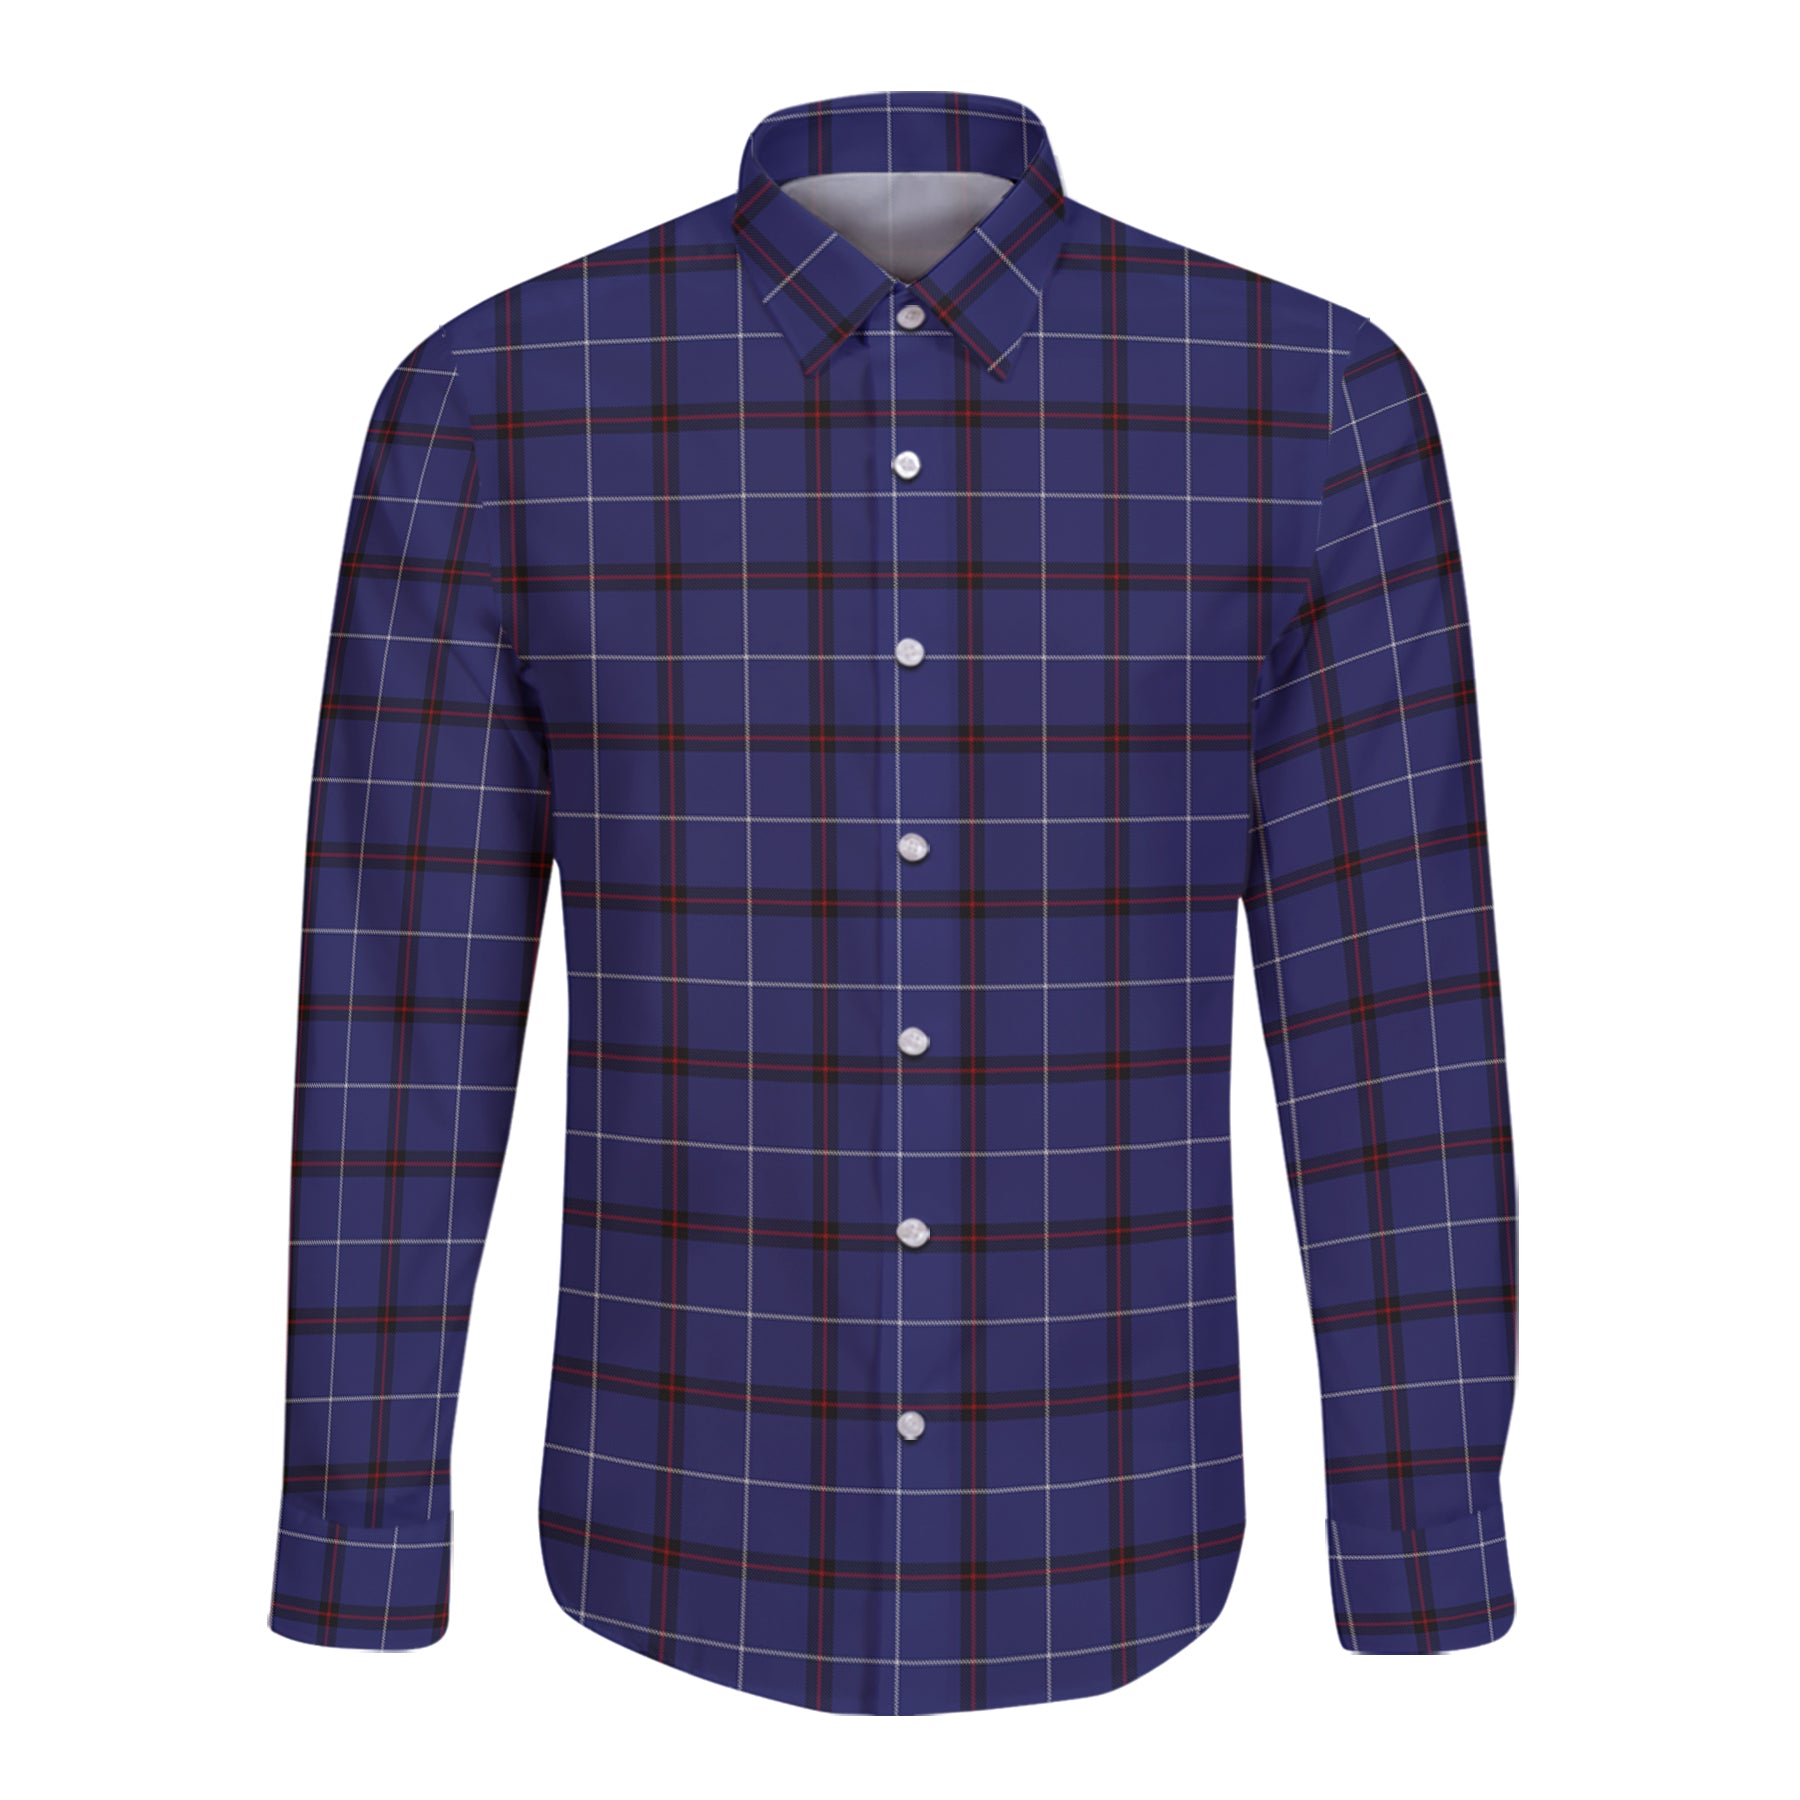 Mccallie Tartan Long Sleeve Button Up Shirt K23